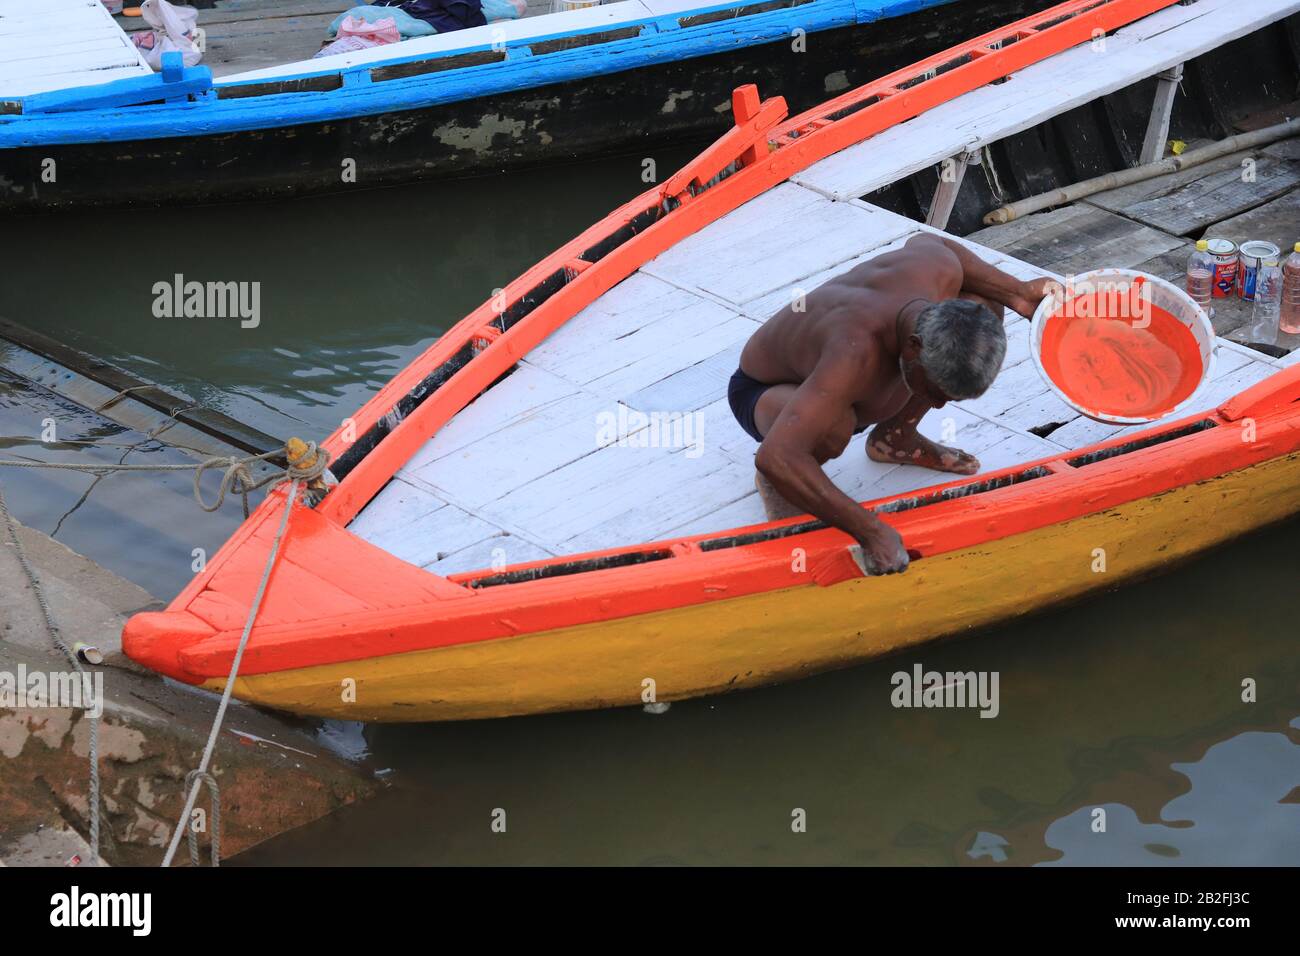 Un homme indien peignant son bateau de couleur orange Banque D'Images